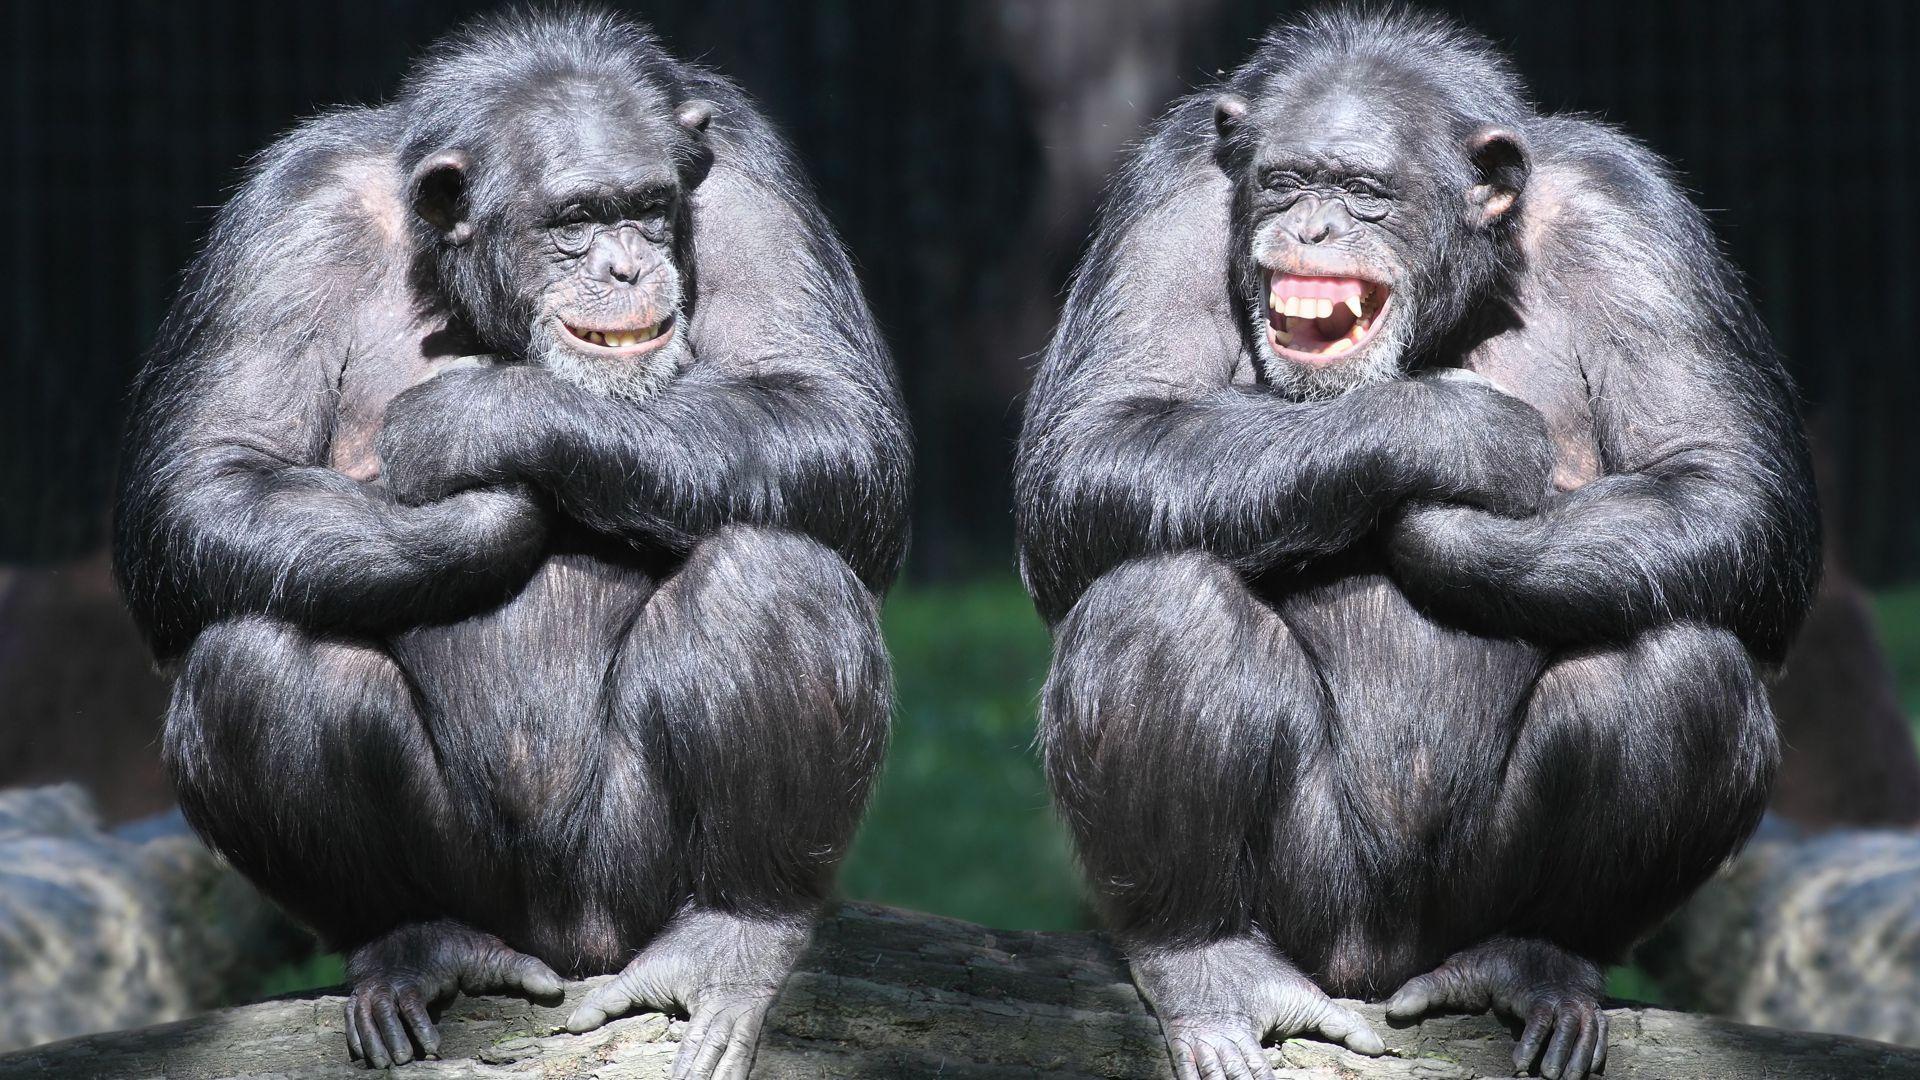 chimpanzee, couple, cute animals, monkey, funny. Chimpanzee